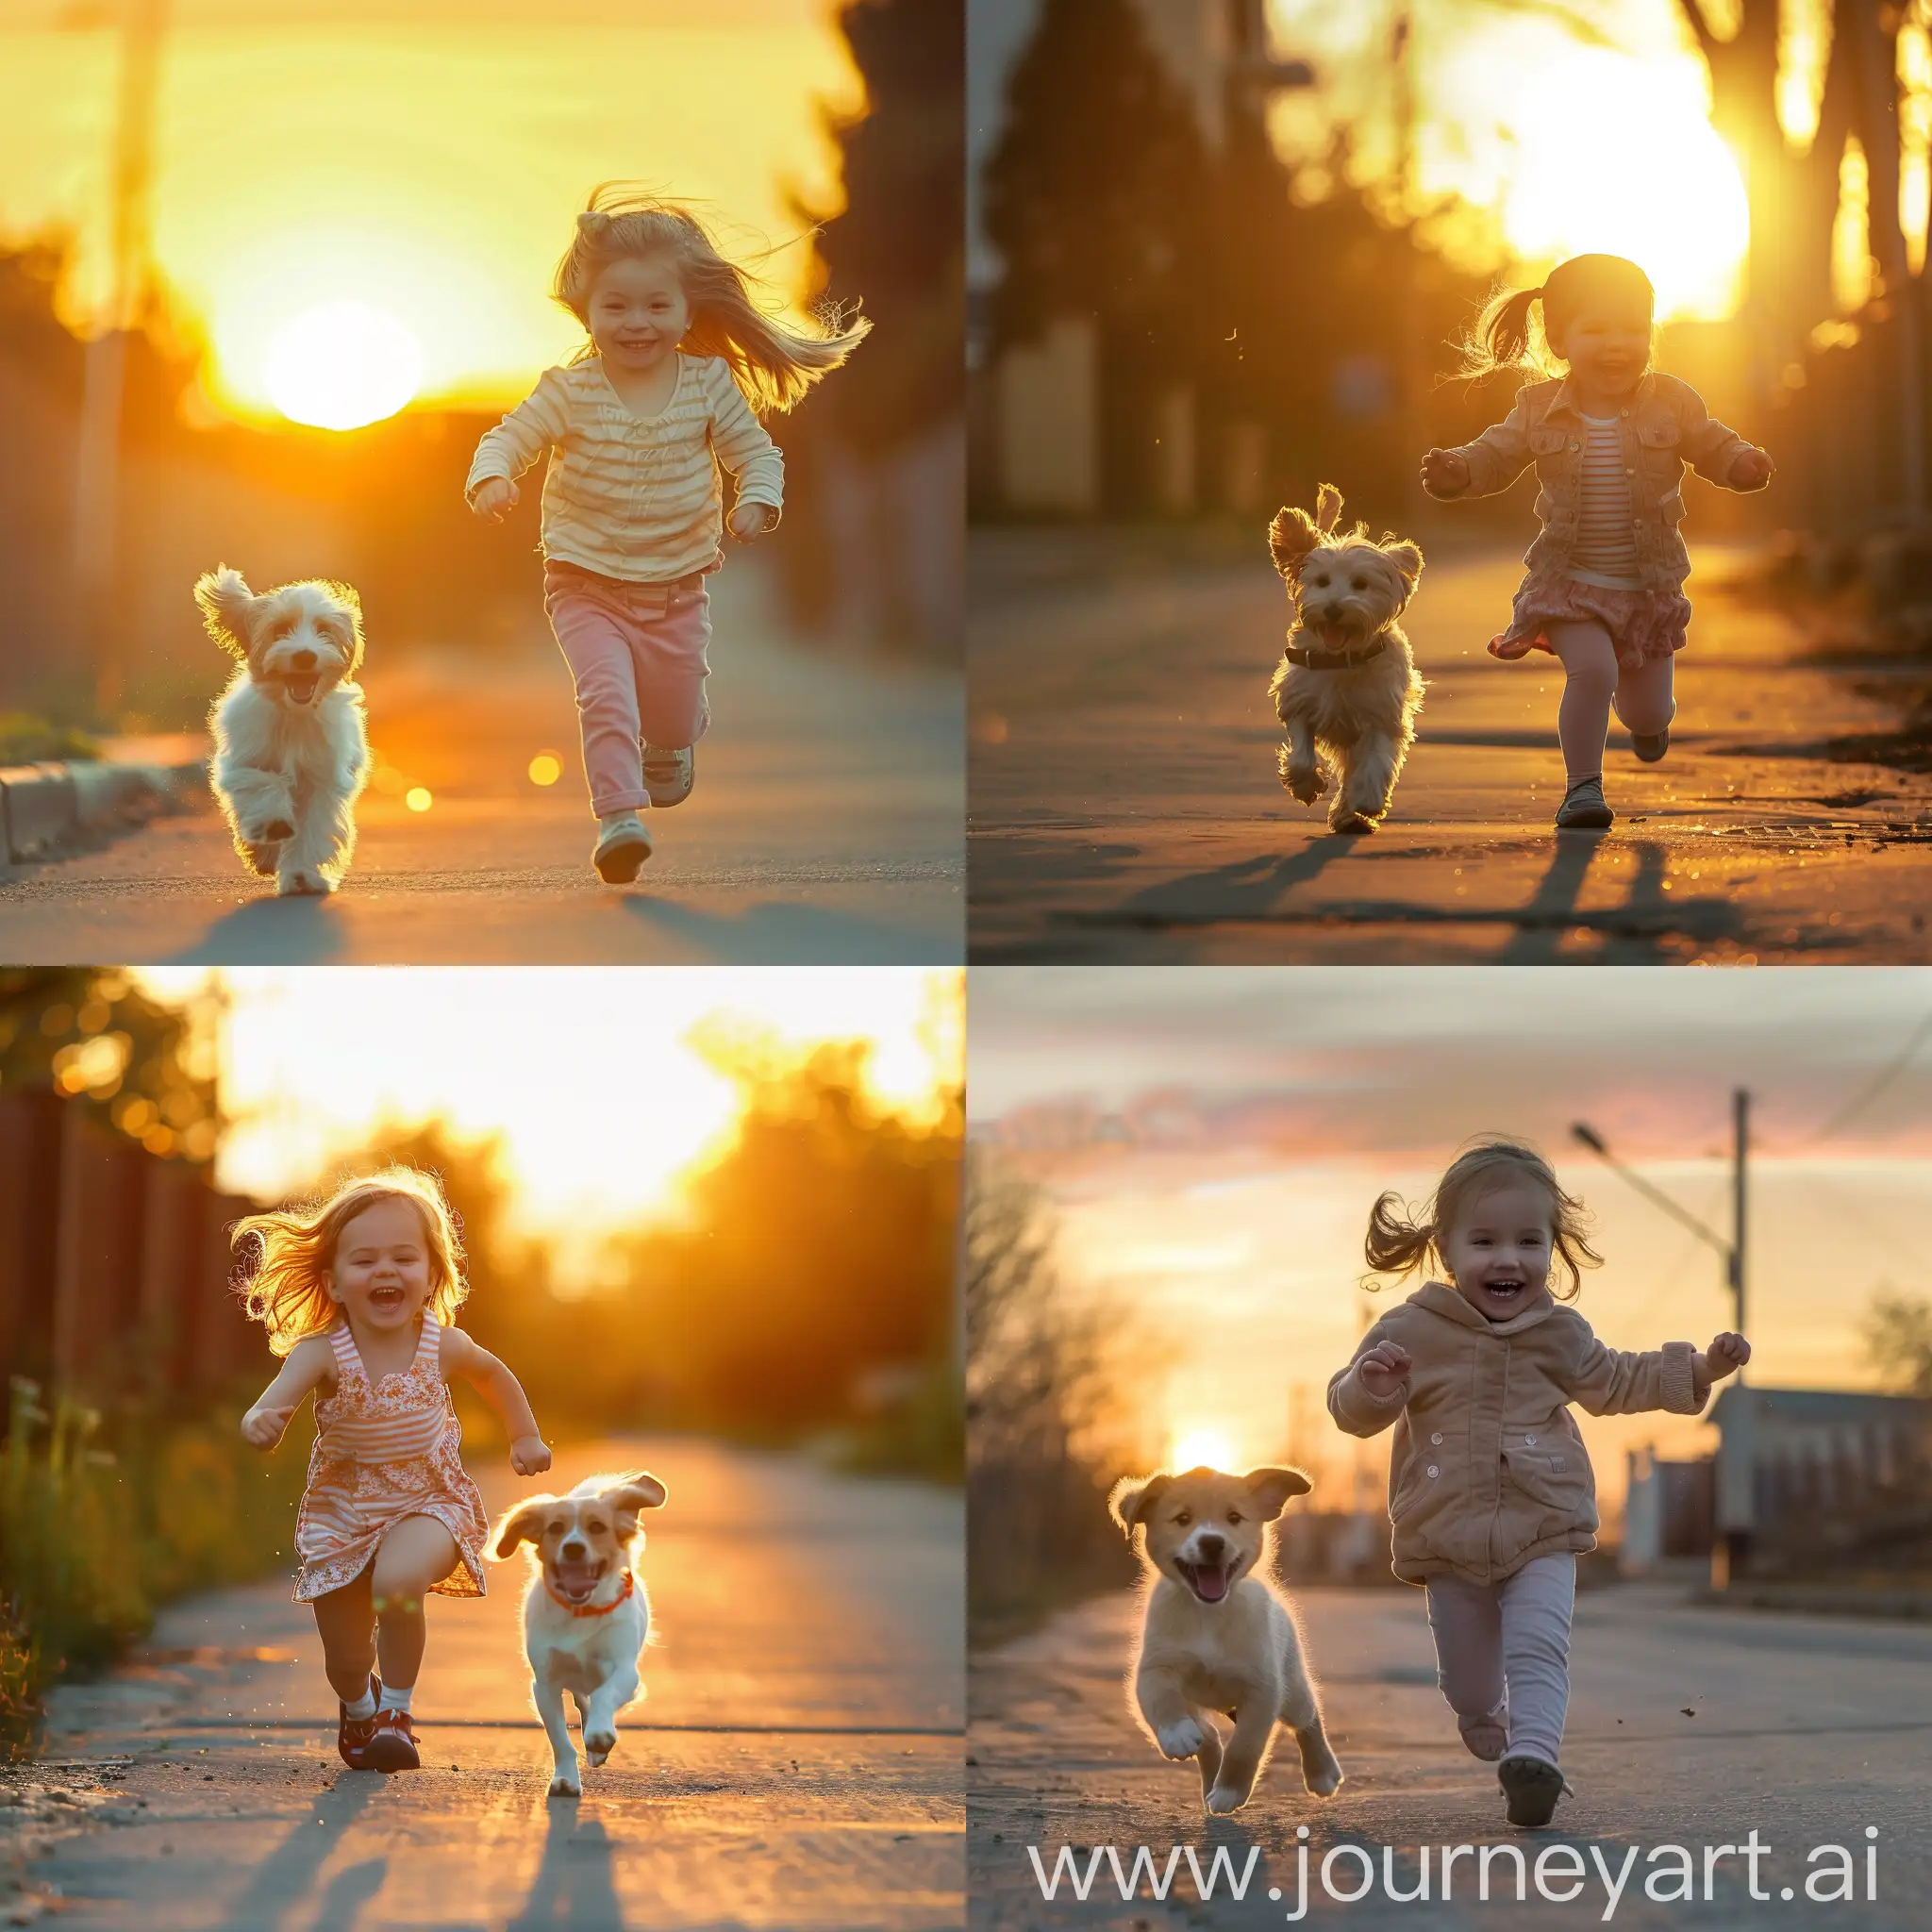 Joyful-Little-Girl-and-Adorable-Dog-Running-in-Sunset-Street-Scene